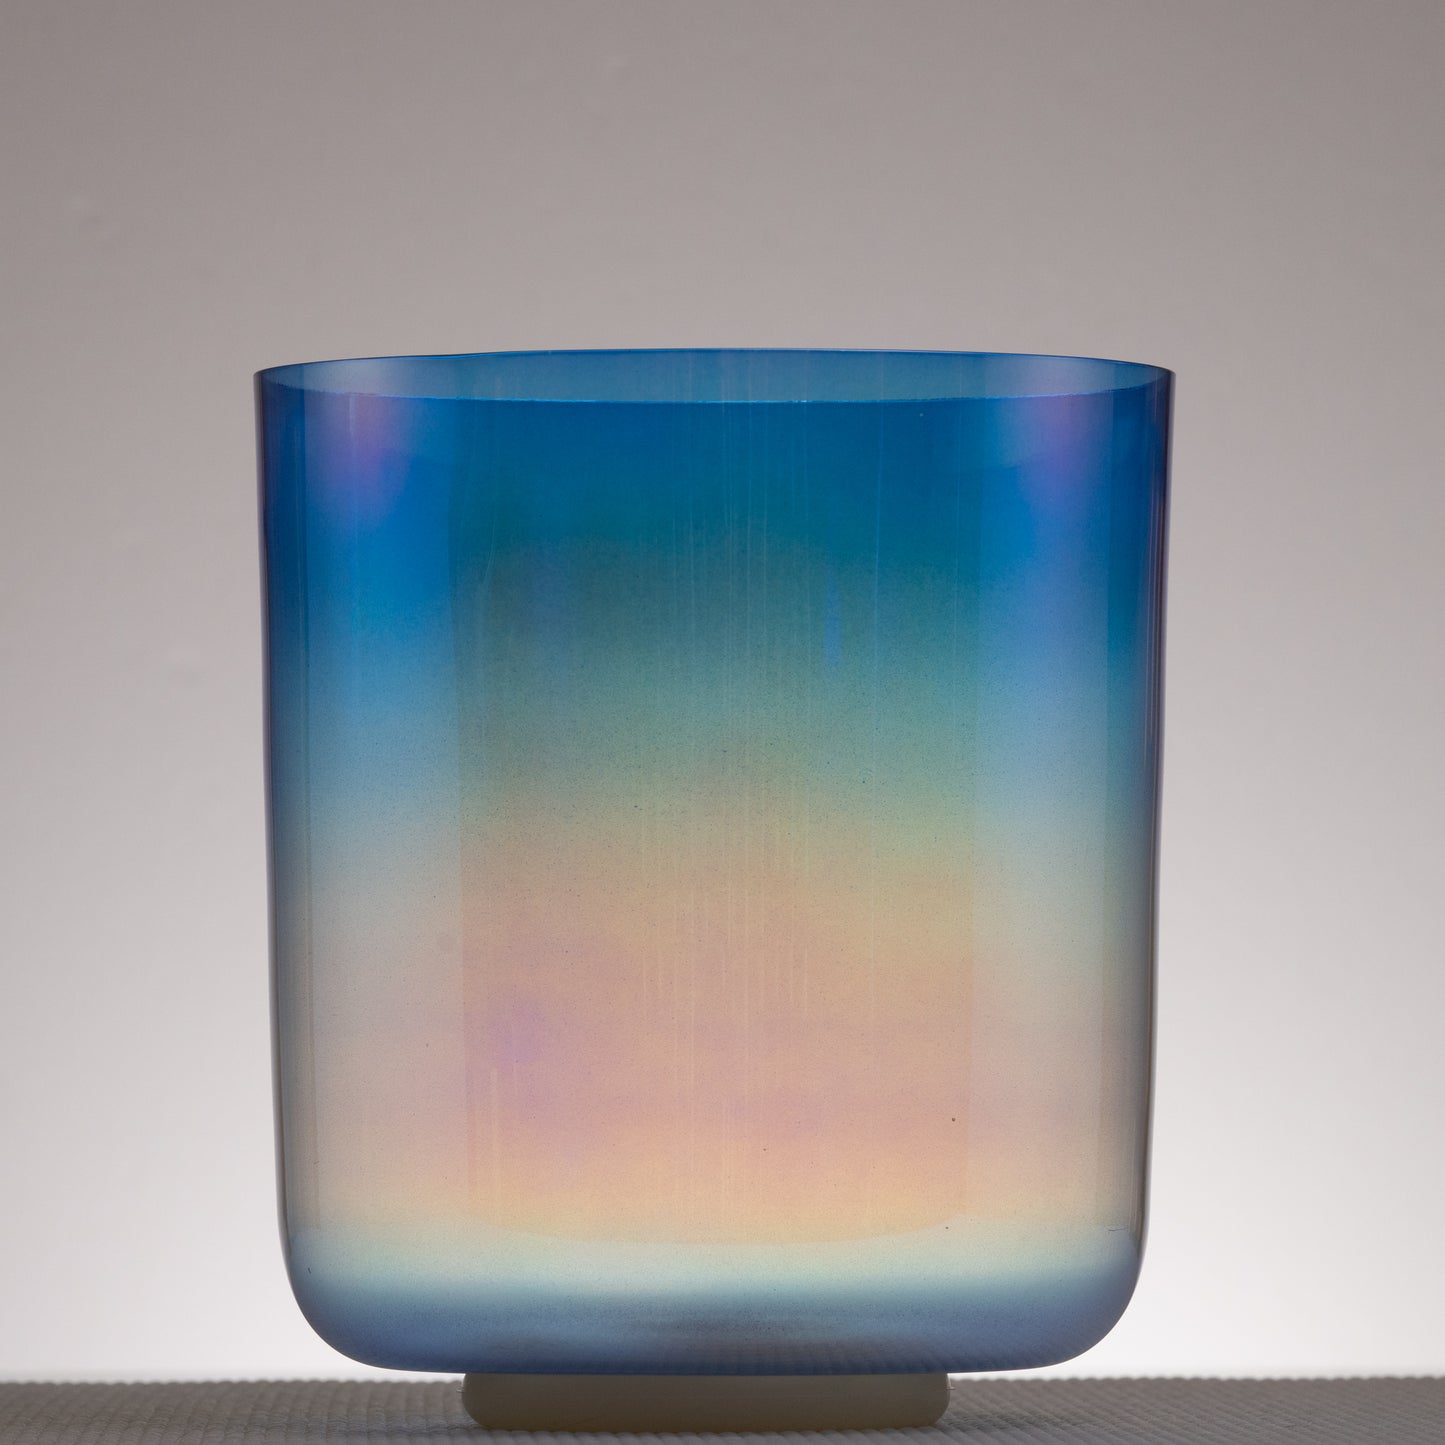 8.25" D-5 Iolite Color Crystal Singing Bowl, Prismatic